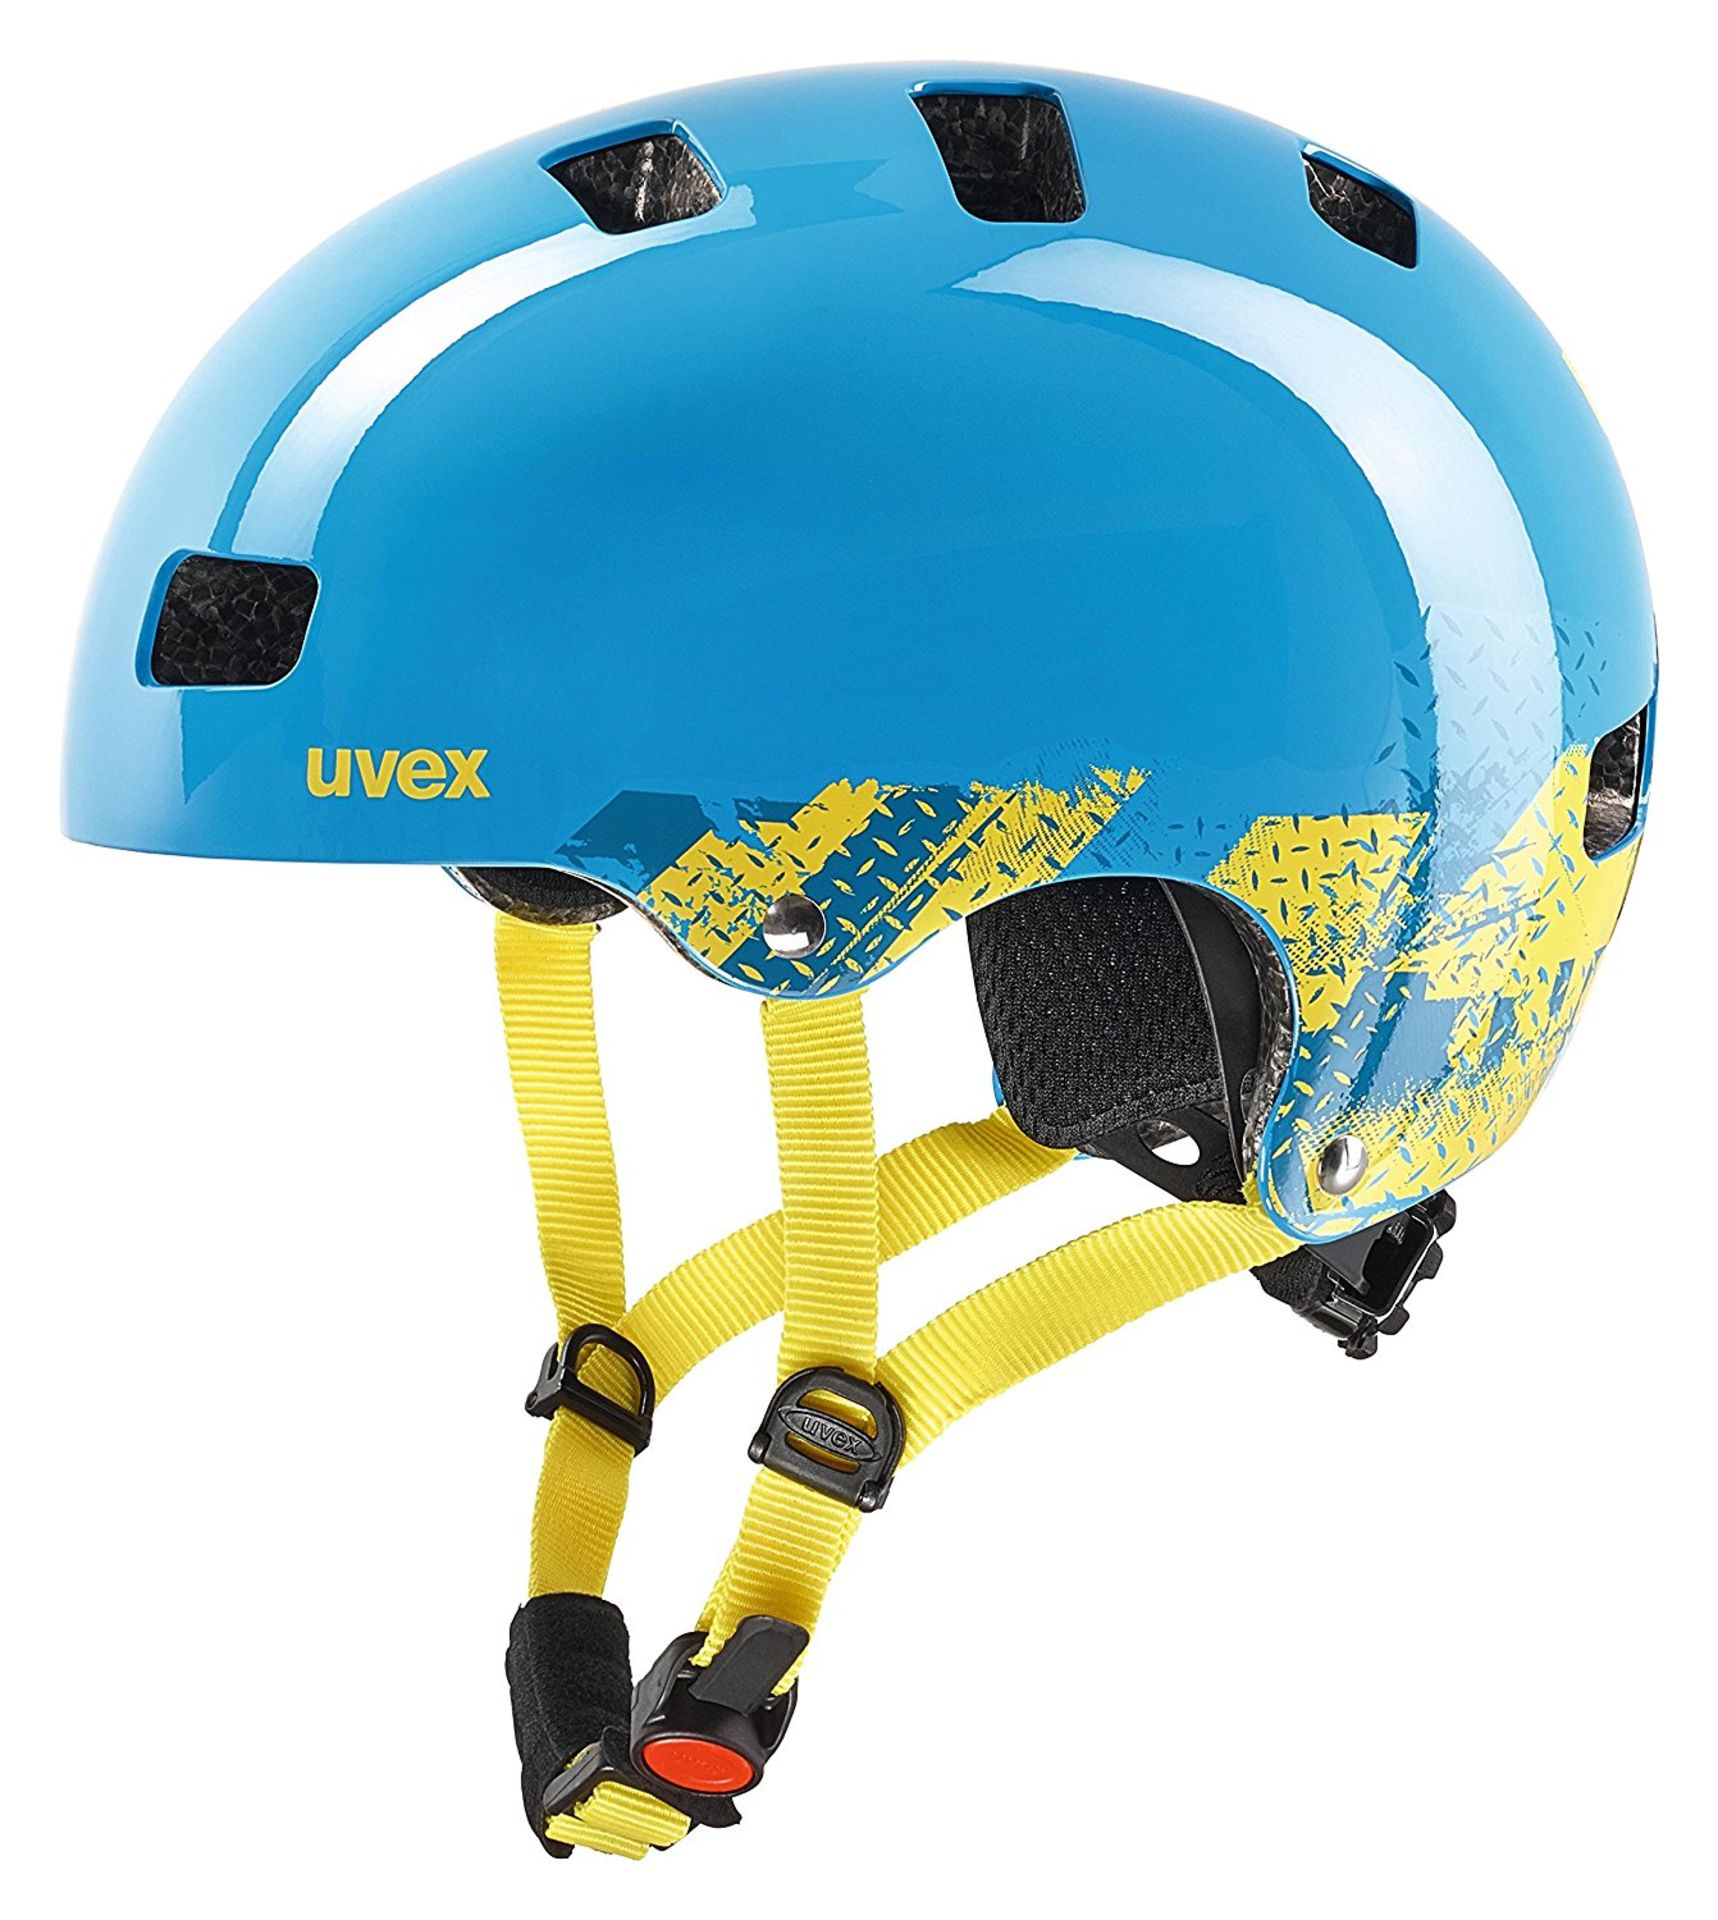 BRAND NEW Uvex kid 3 cycle Cycle Helmet